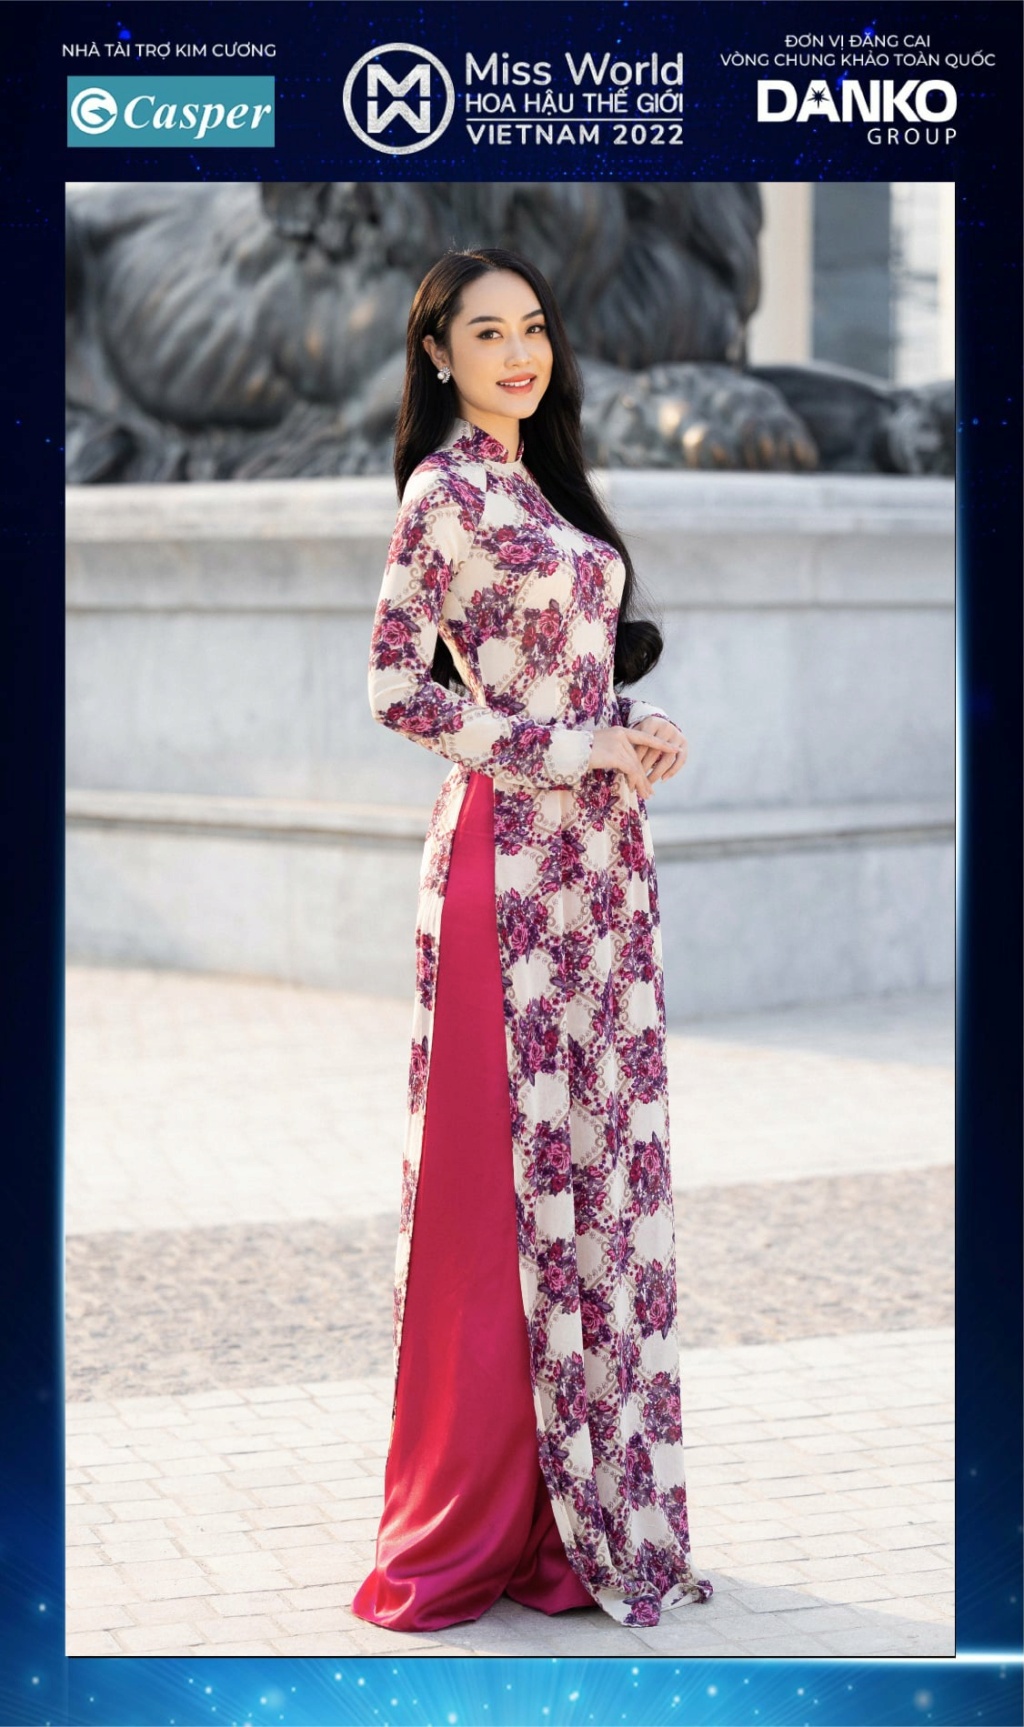 Miss World Vietnam 2022 27911410